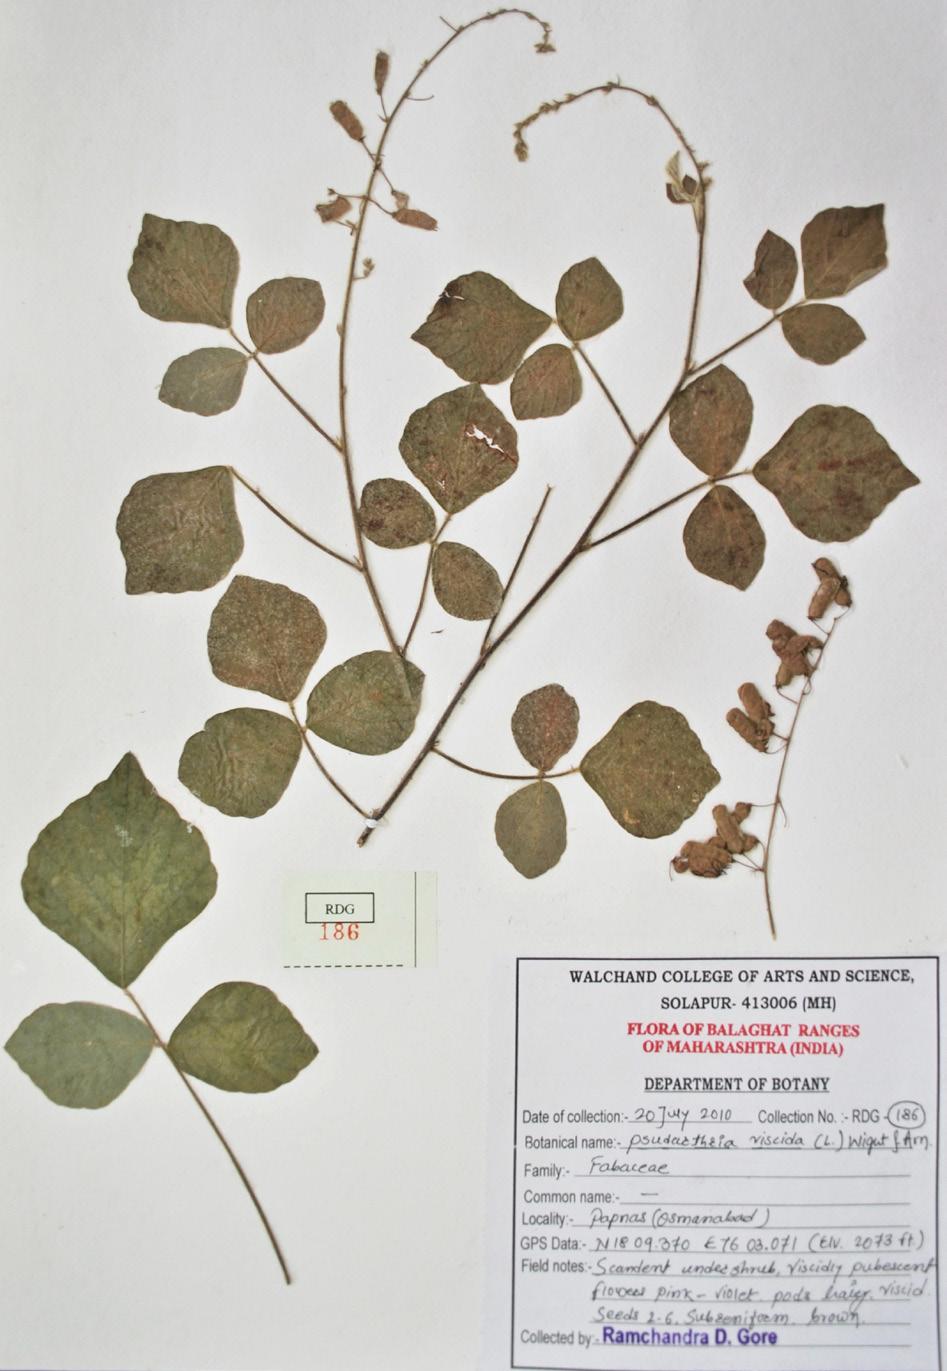 Image 12. Herbarium of Pseudarthria viscida (L.) Wight & Arn. Image 14. Herbarium of Pueraria montana (Lour.) Merr. Image 13. Pueraria montana (Lour.) Merr. S.P. Gaikwad Specimen examined: RDG 728 (Walchand College, Herbarium), 18.